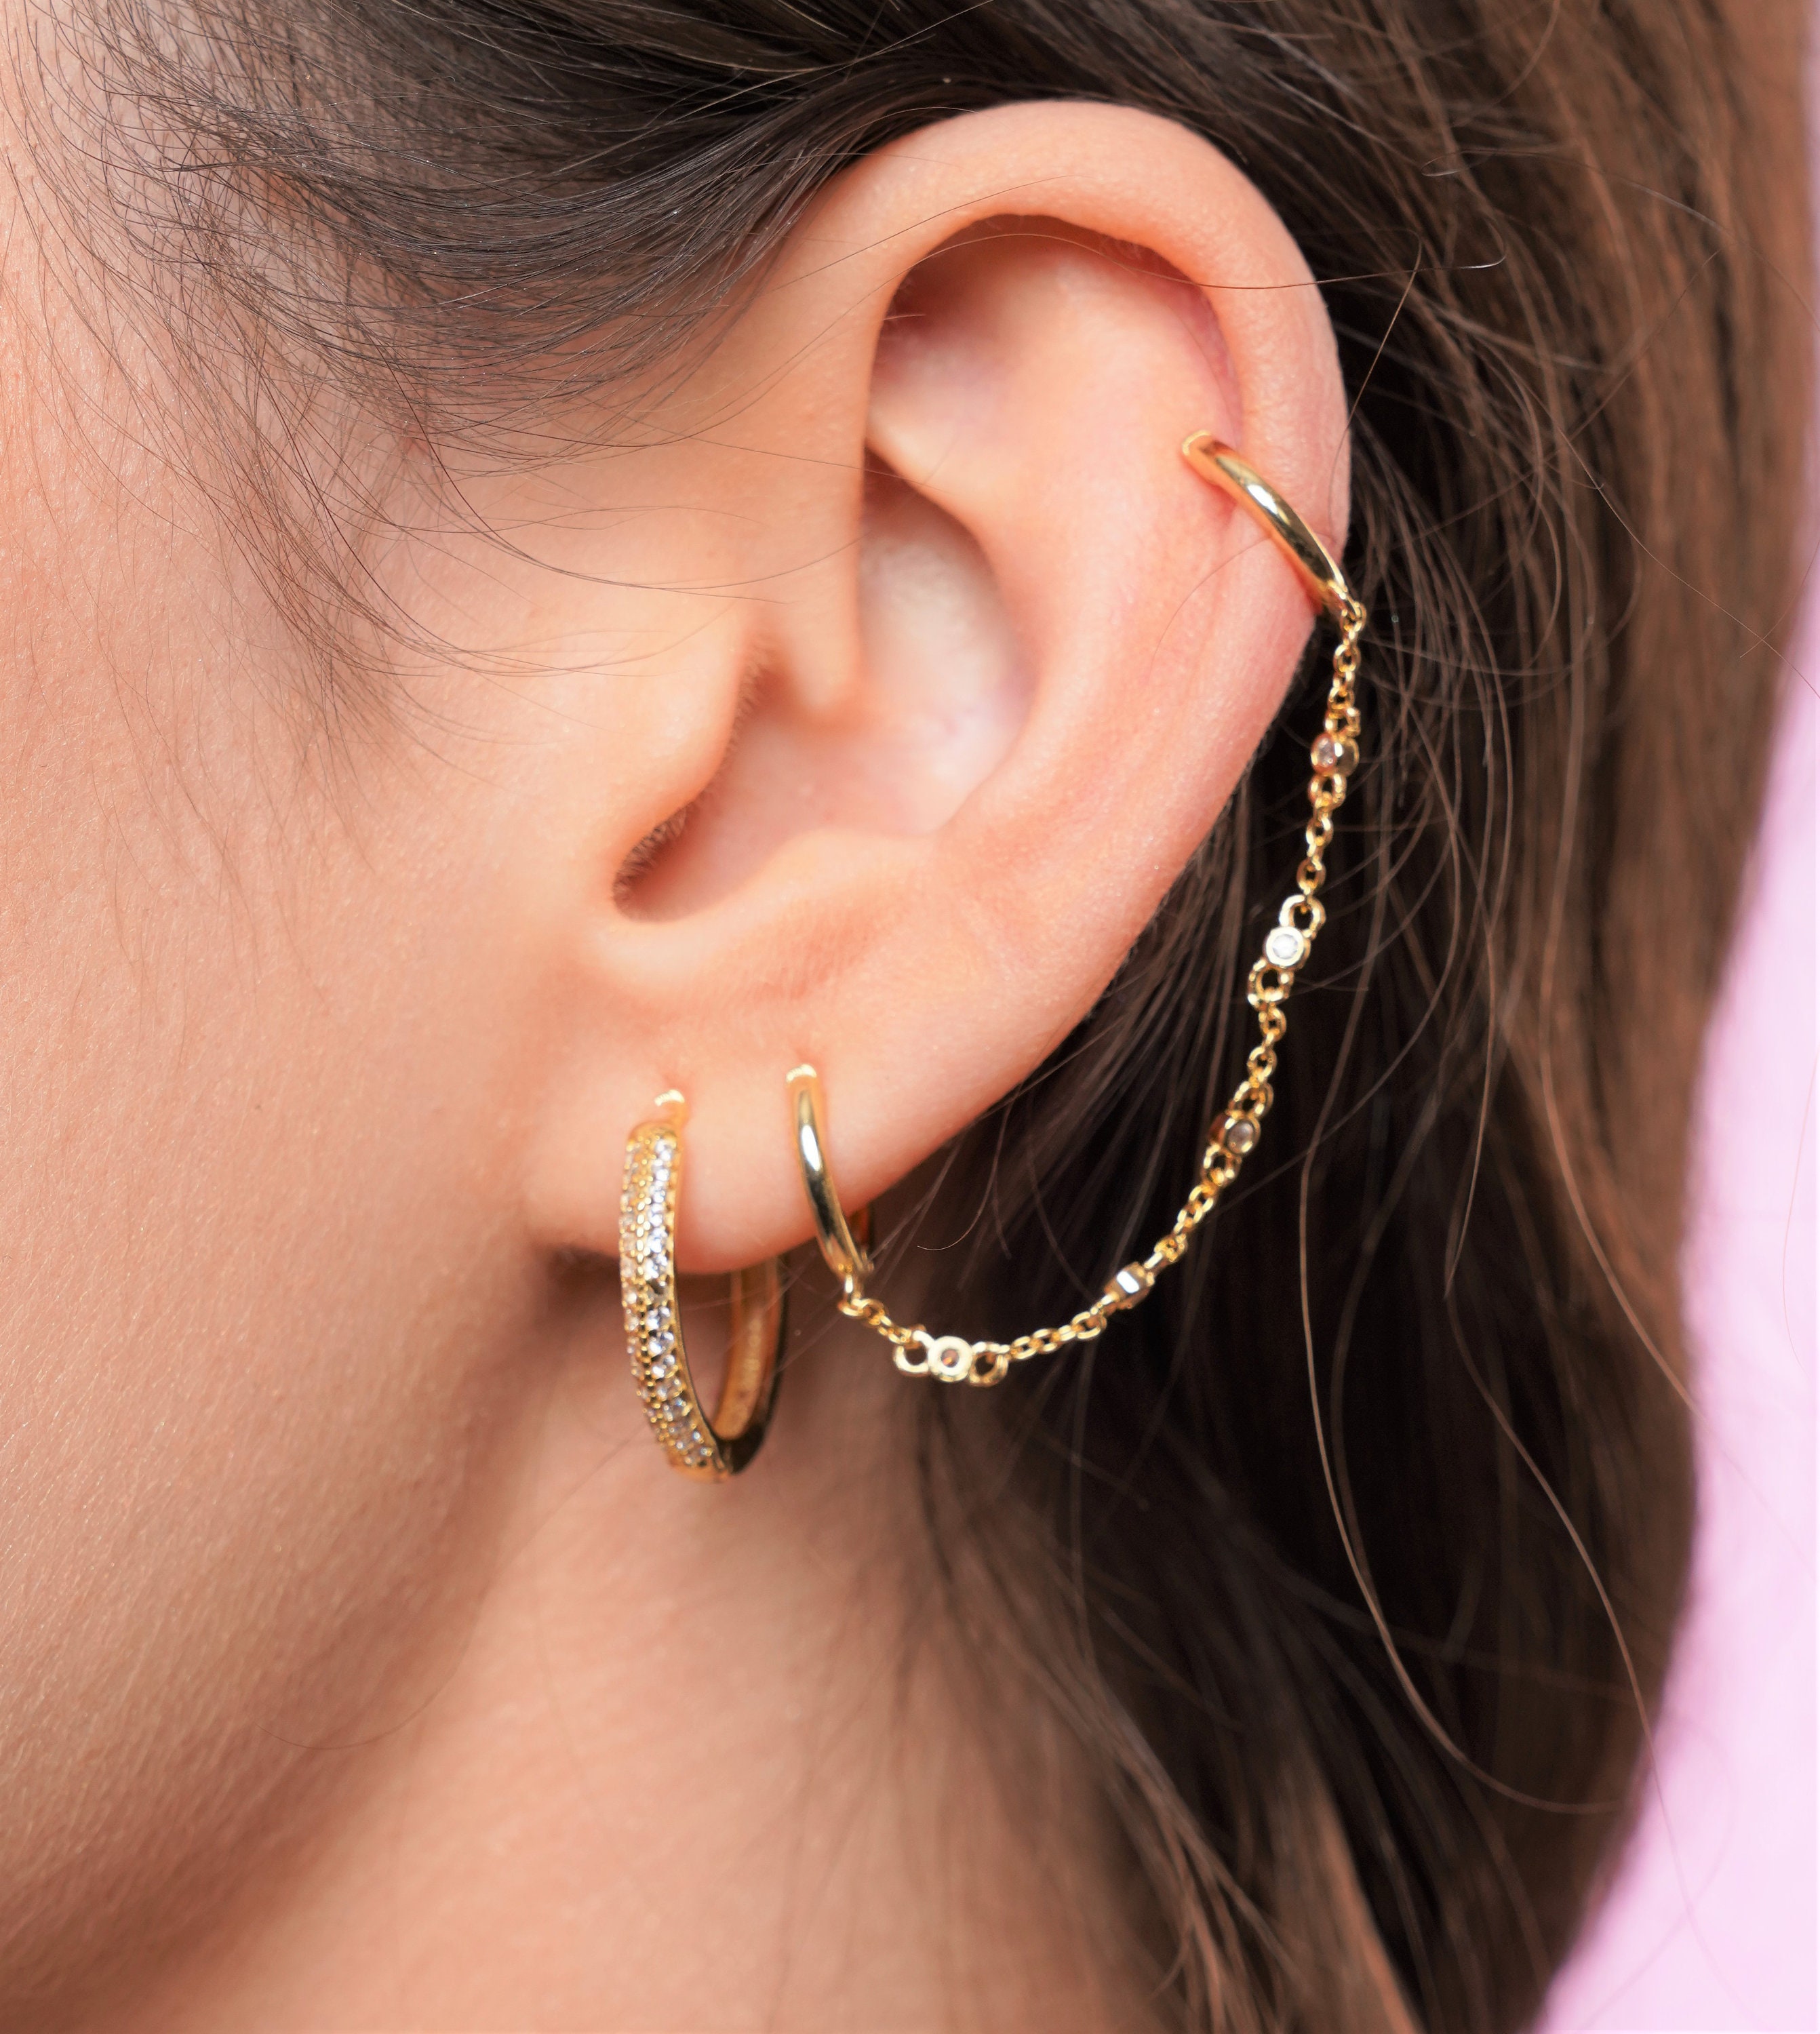 Amazon.com: Dainty 14k Gold Plated Chain Earrings Double Piercing Dangle Chain  Huggie Hoop Earrings Cubic Zirconia Stud Earrings for Women Girls Teen  Hypoallergenic: Clothing, Shoes & Jewelry